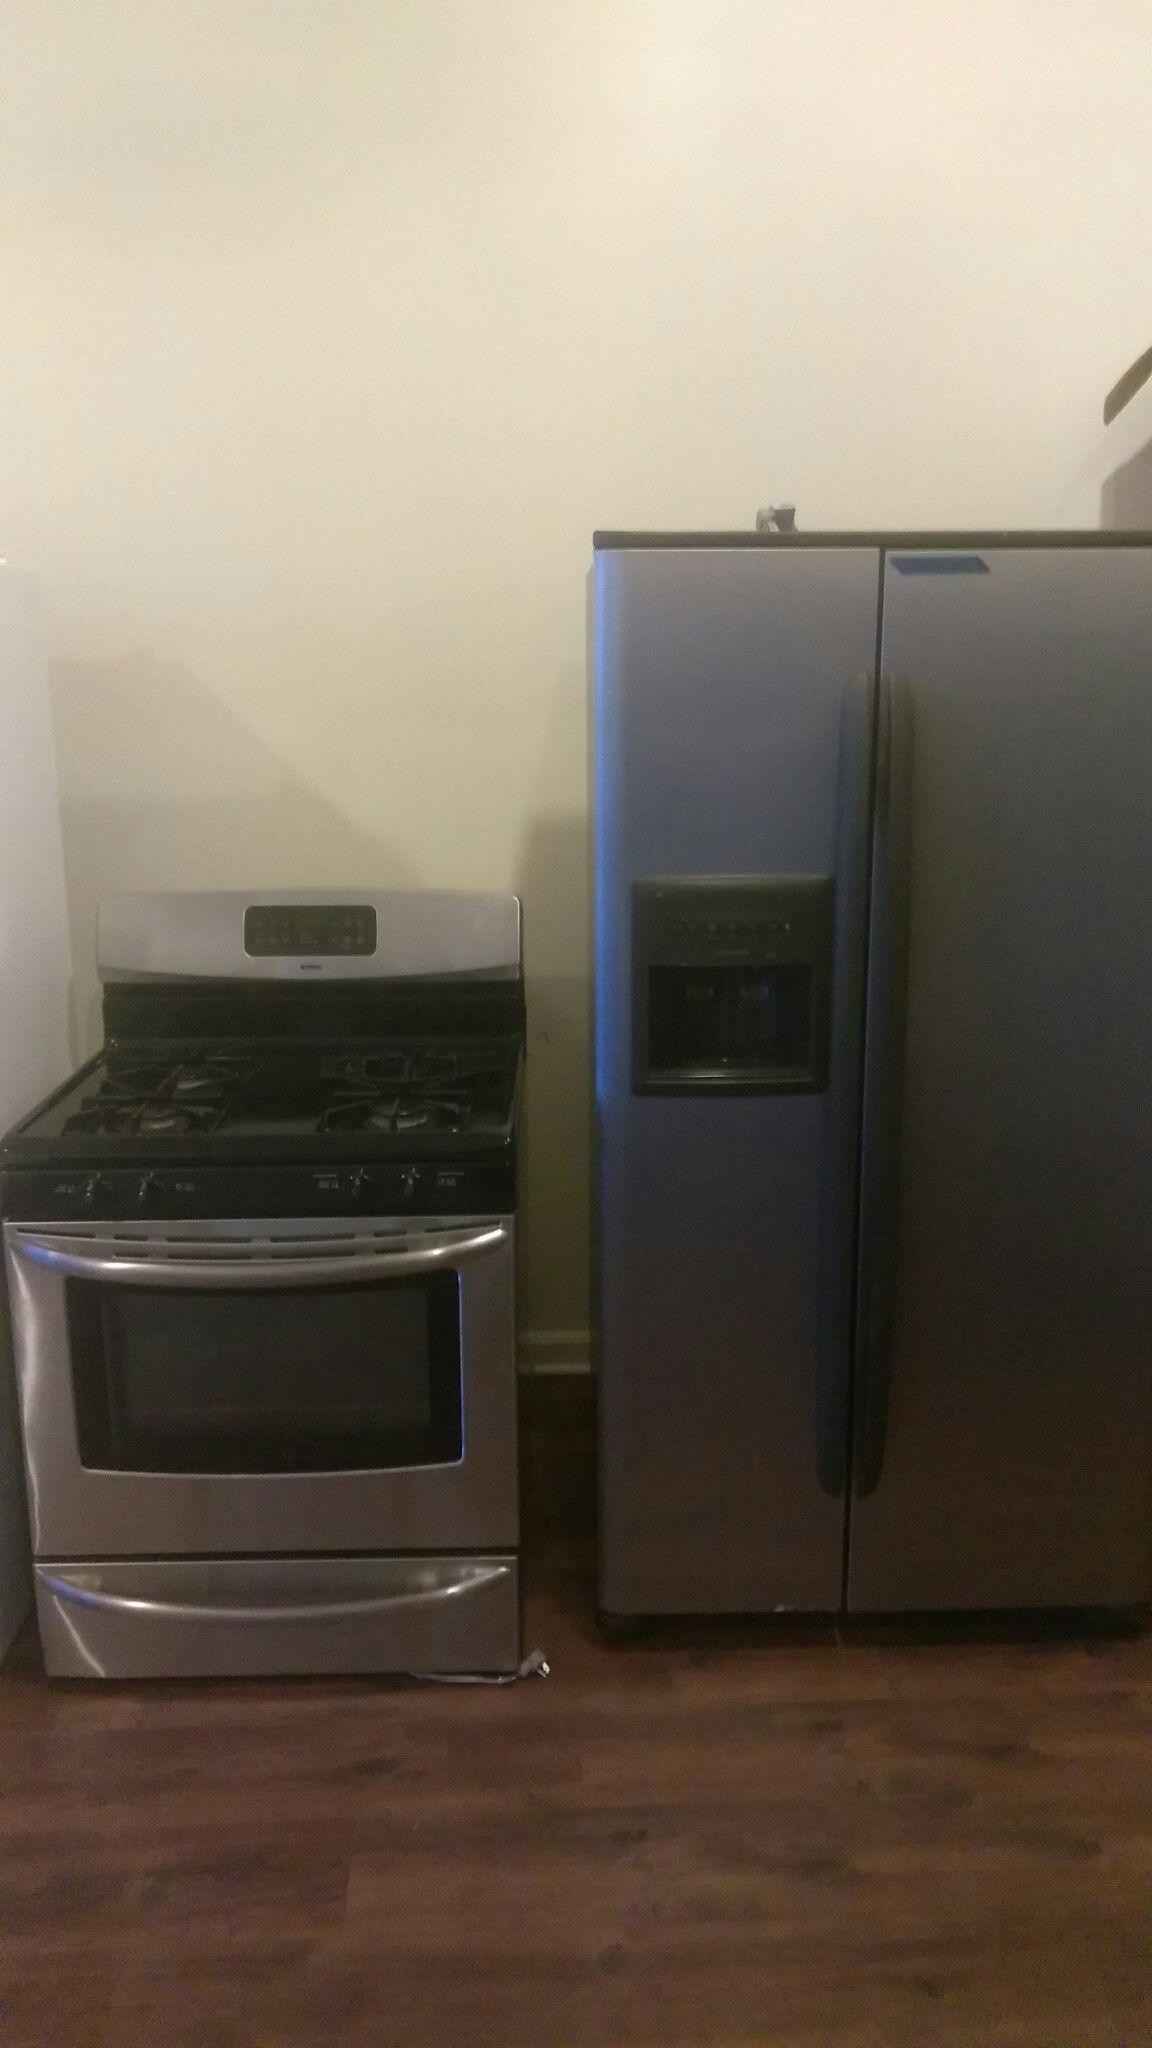 Kenmore stainless steel refrigerator 2-door and stainless steel Kenmore stove